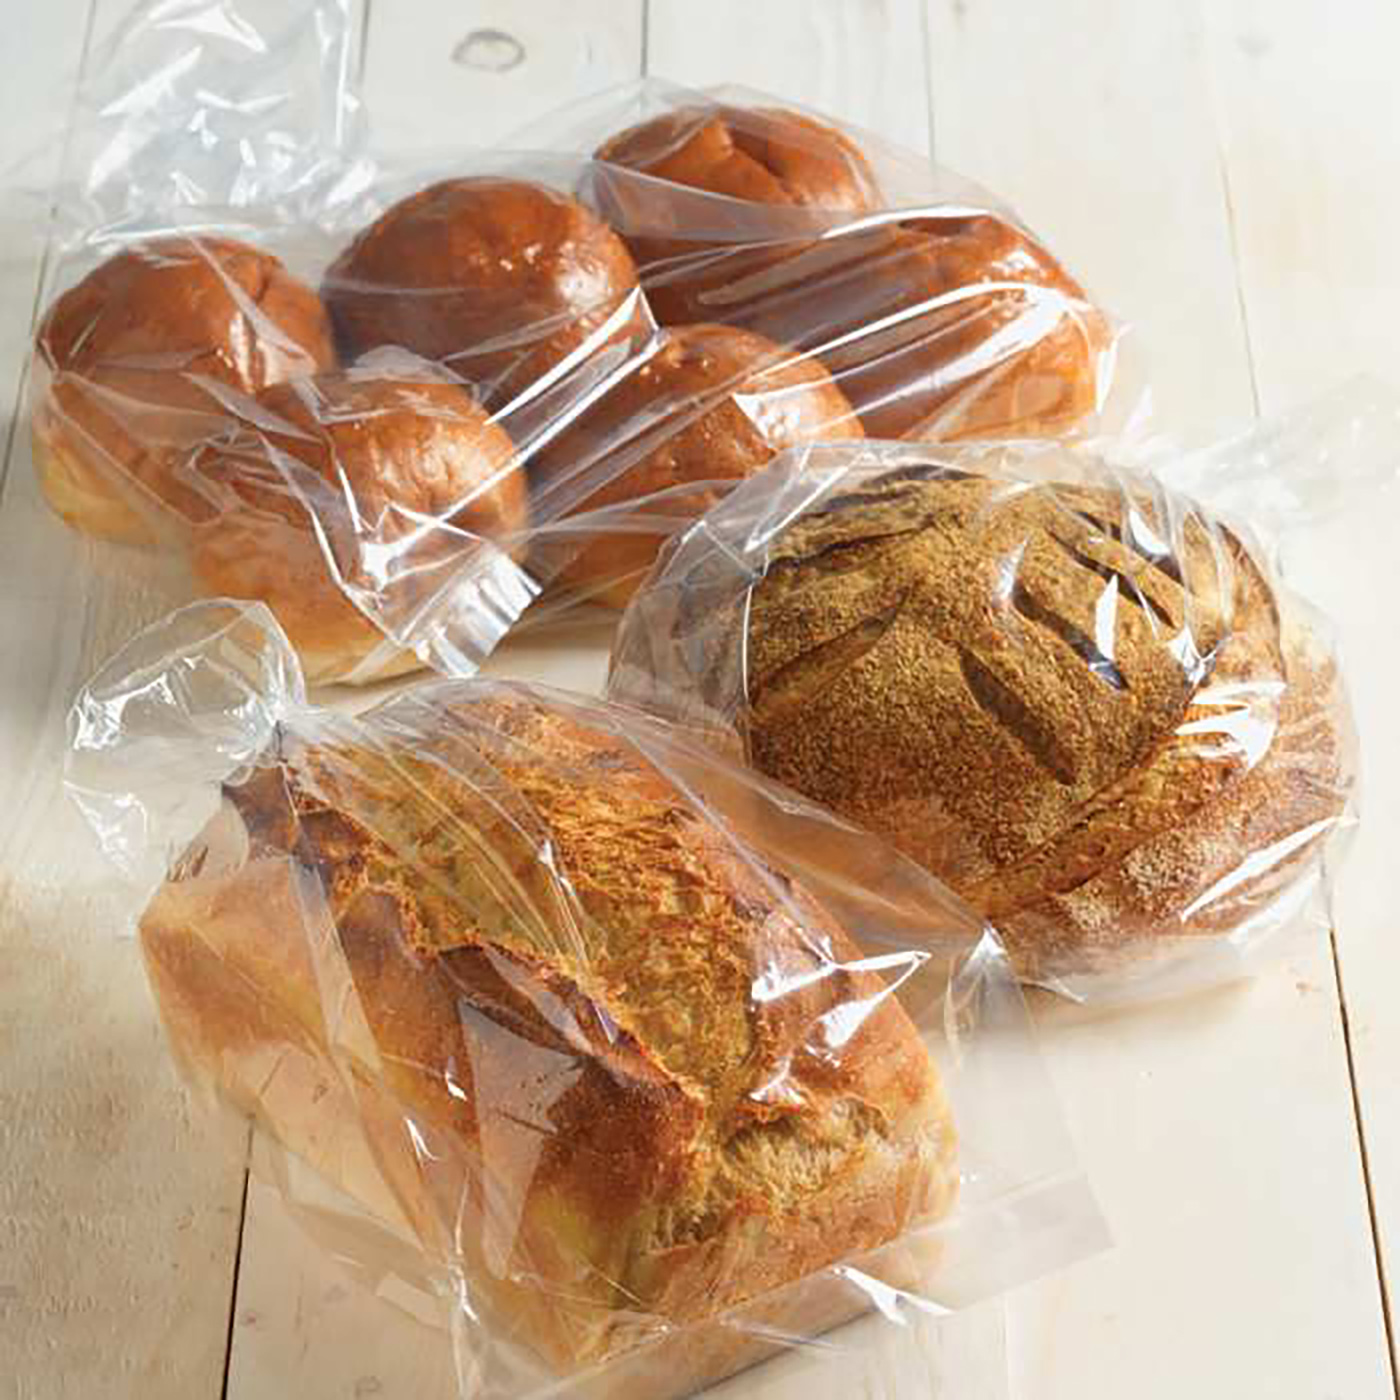 Булочки покупные. Упаковка хлебобулочных изделий. Пакеты для упаковки хлеба. Булочка в упаковке. Хлеб в полиэтиленовом пакете.